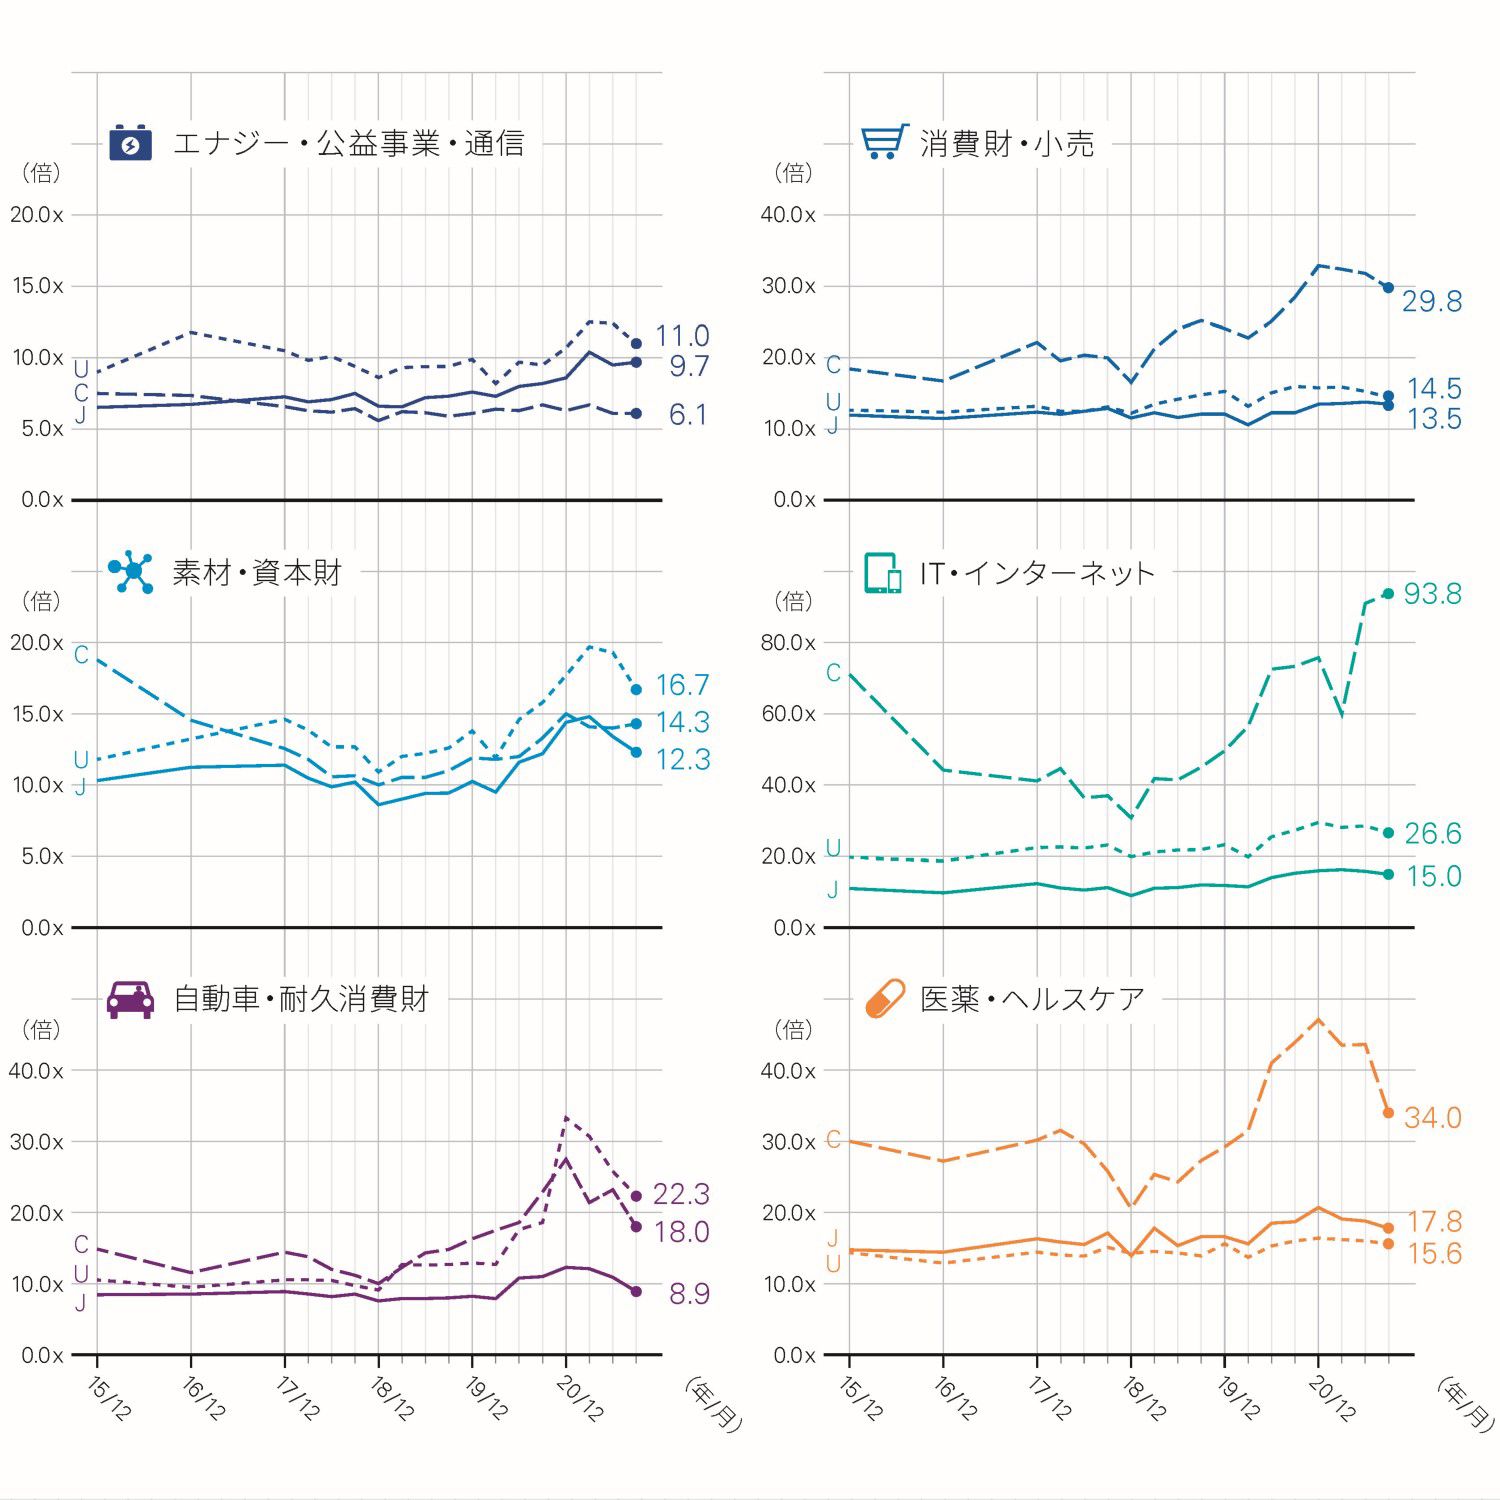 セクター別 各国比較EV/EBITDA倍率推移チャート：日本・米国・中国